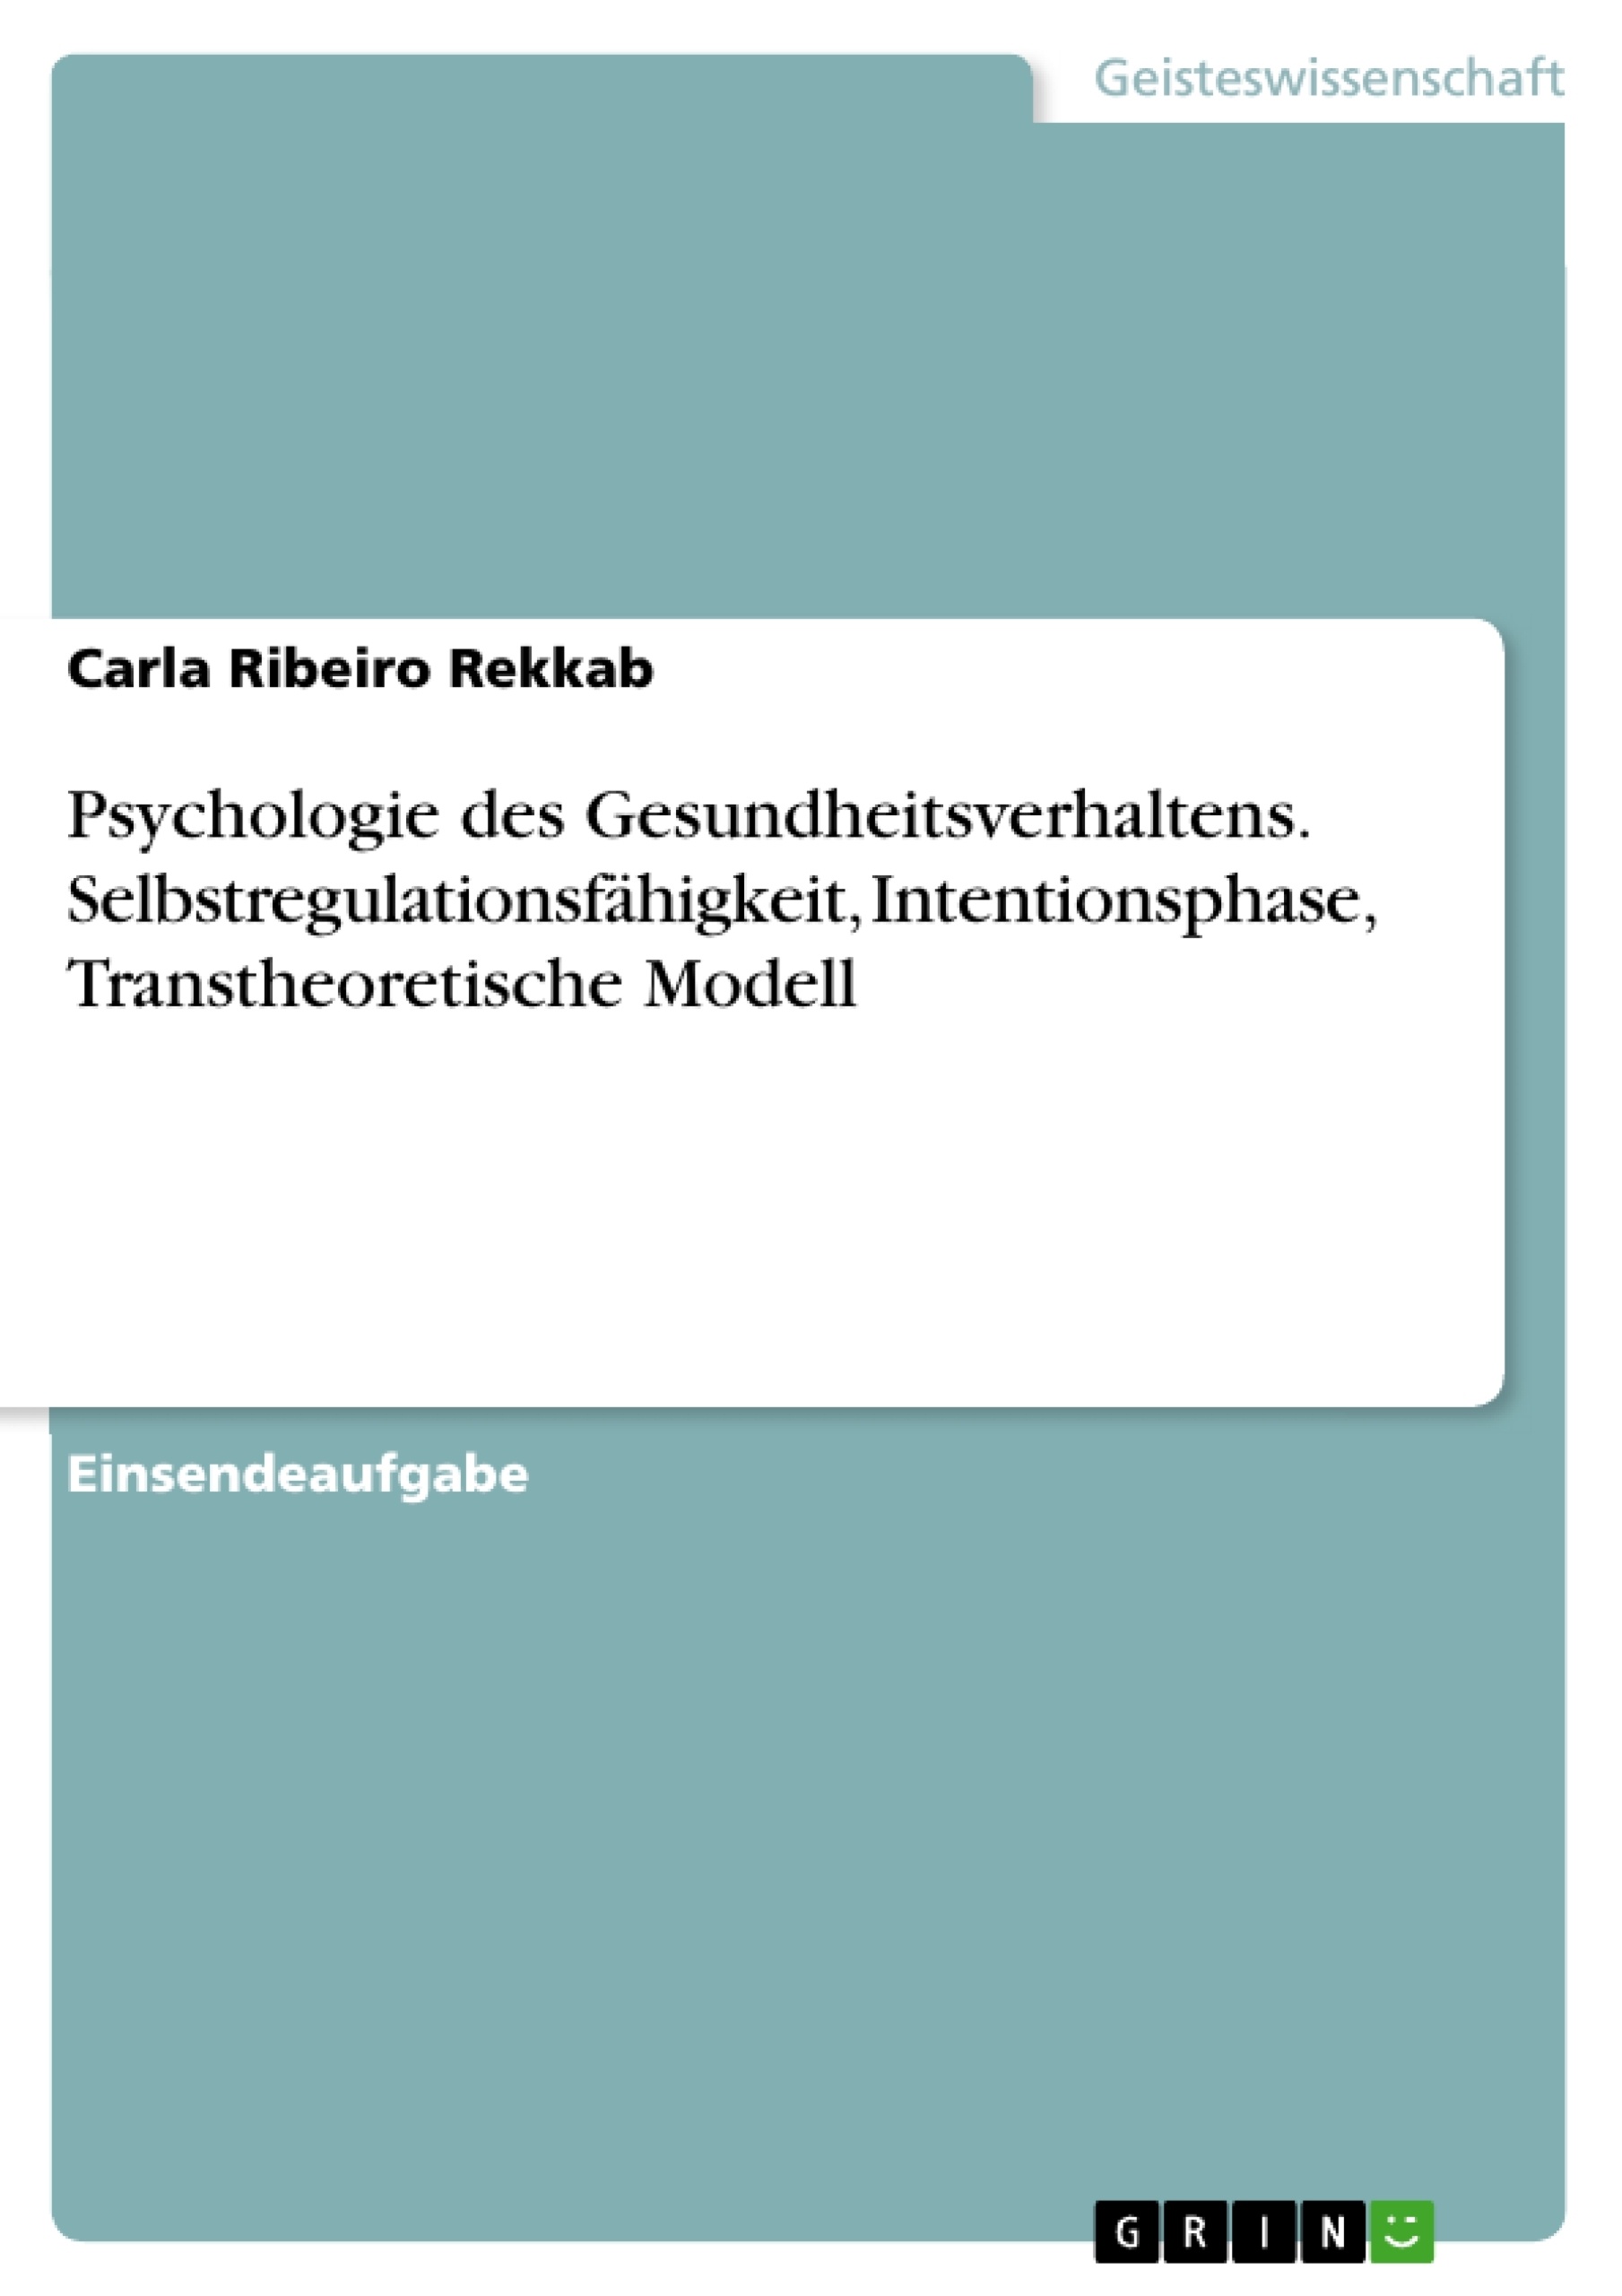 Title: Psychologie des Gesundheitsverhaltens. Selbstregulationsfähigkeit, Intentionsphase, Transtheoretische Modell